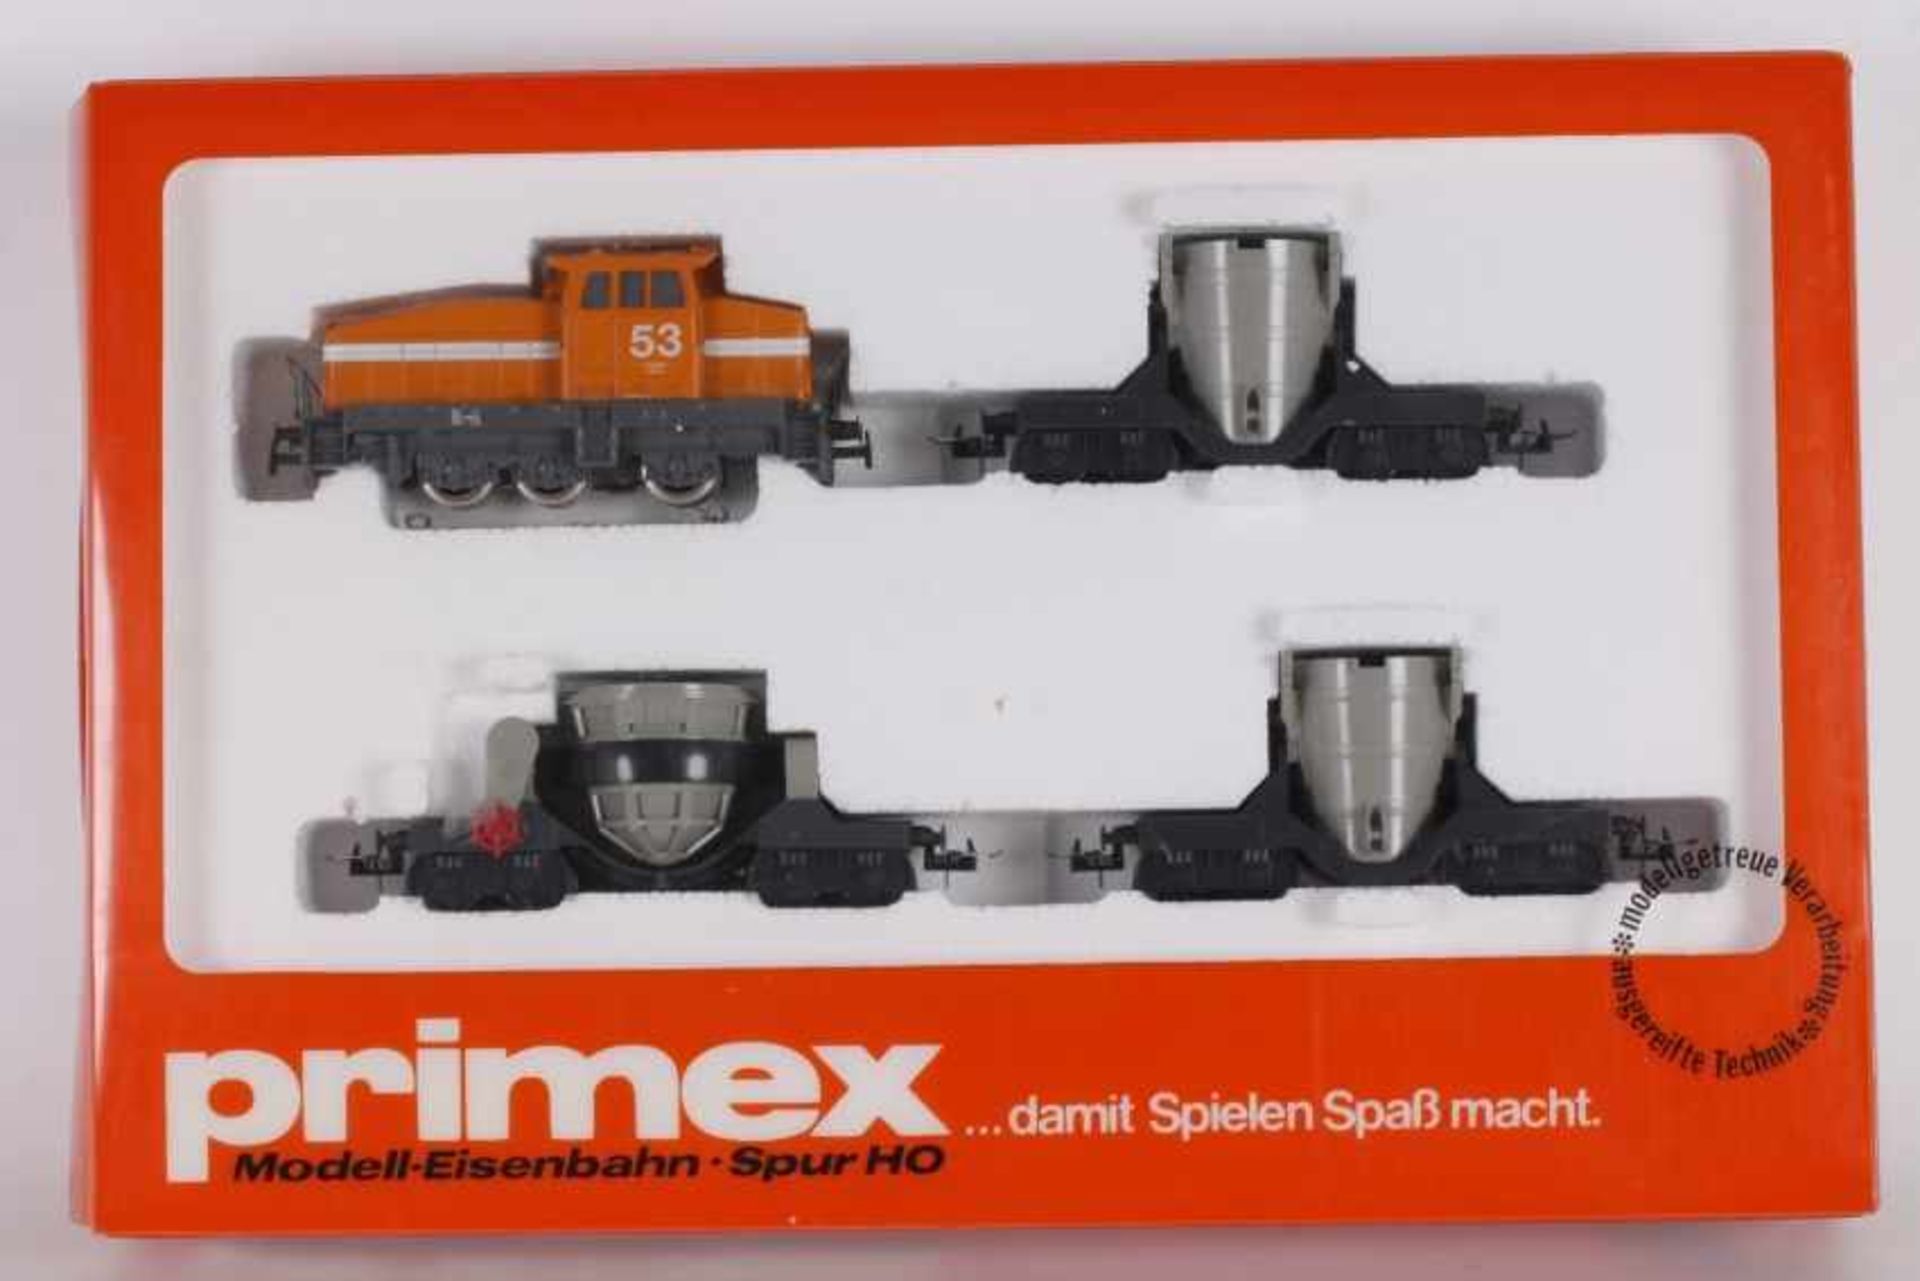 Primex 2704, StahlwerkszugPrimex 2704, Stahlwerkszug, Werks-Diesellok "53", drei Wagen, sehr gut